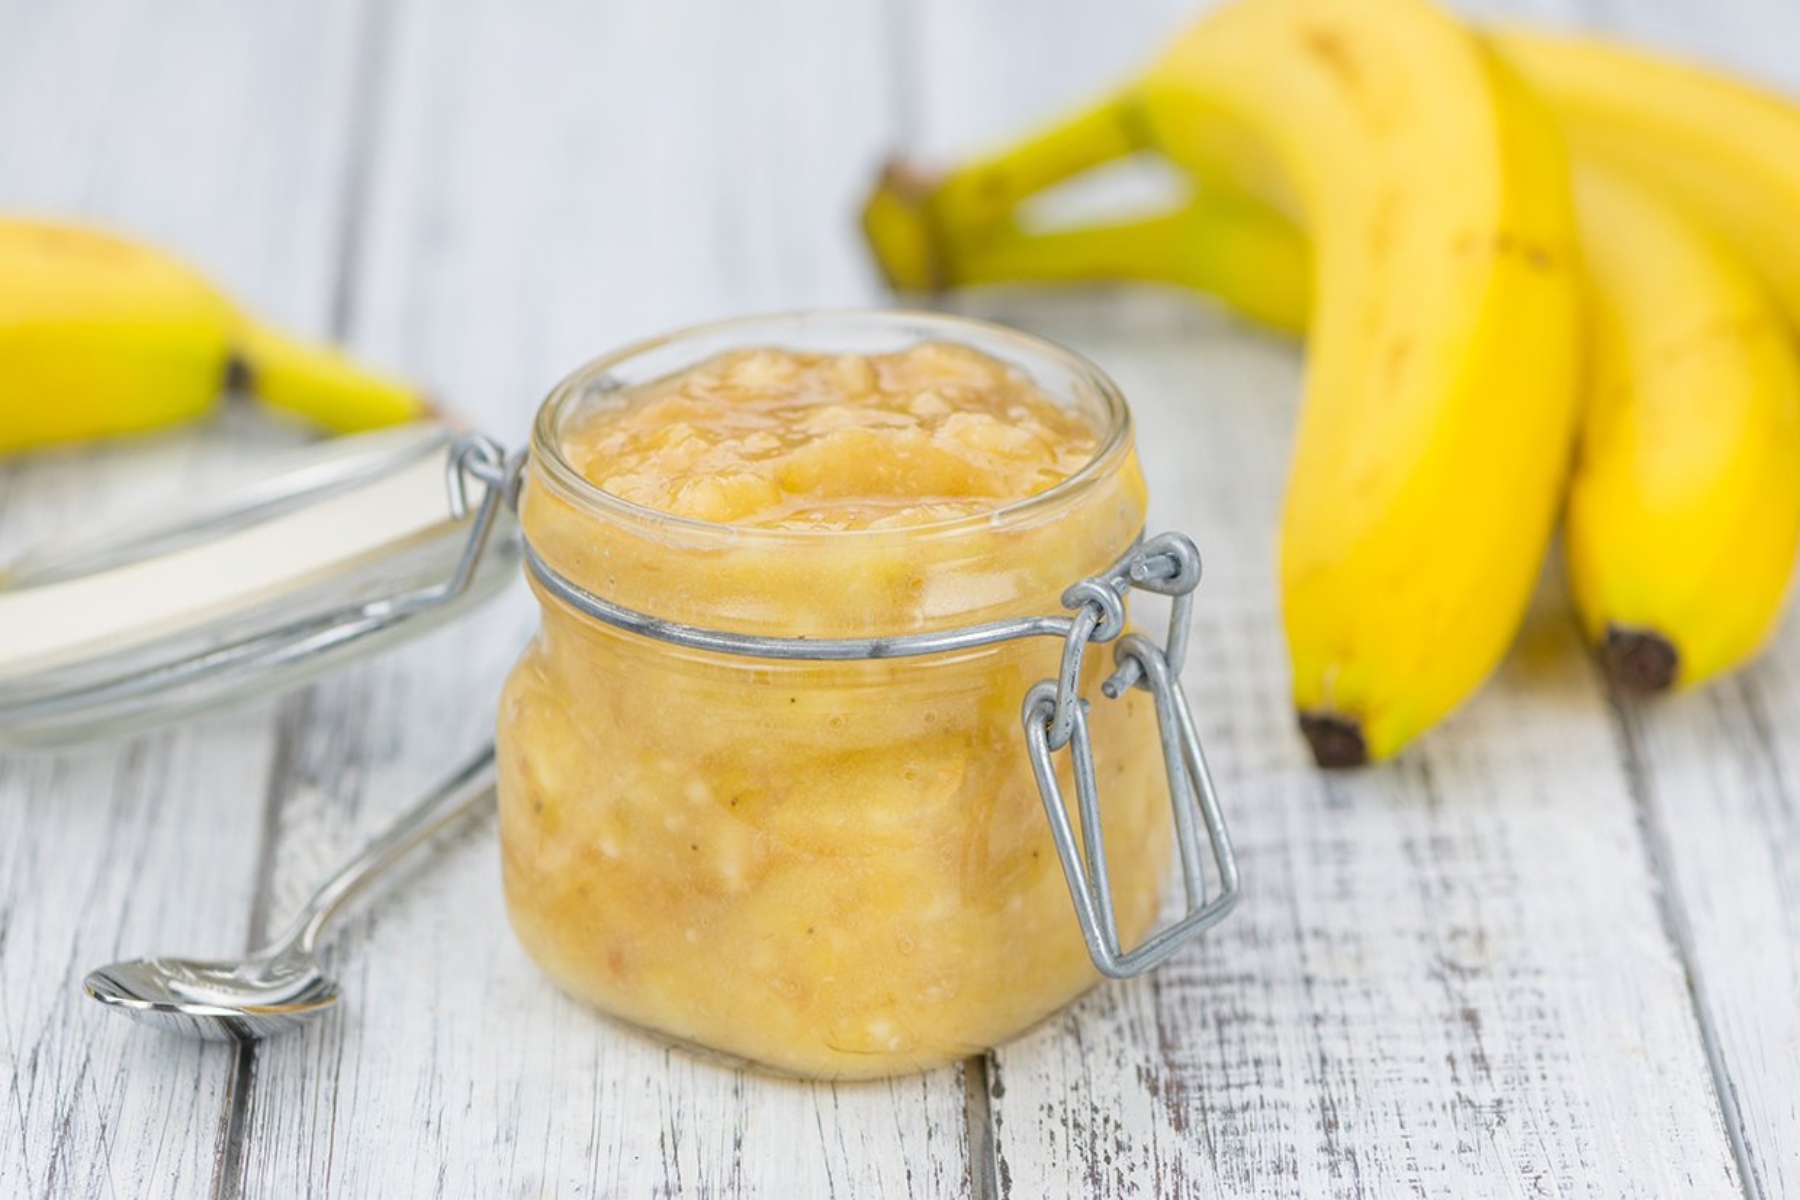 Μπανάνα μαρμελάδα: Μια συνταγή για εύκολη μαρμελάδα με φρουτένια γεύση